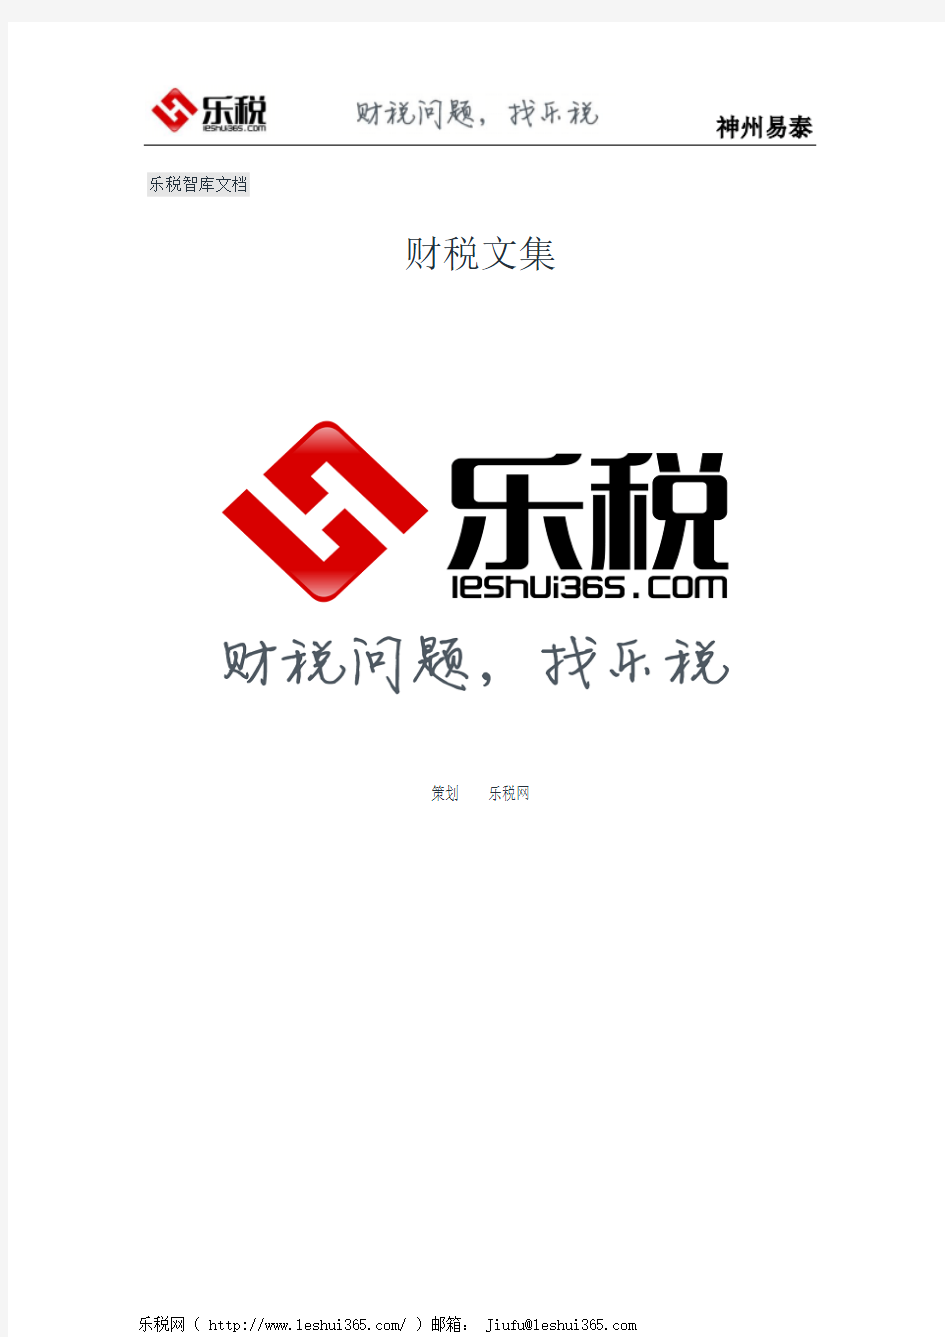 江苏省地方税务局年所得12万元以上个人所得税自行申报指南